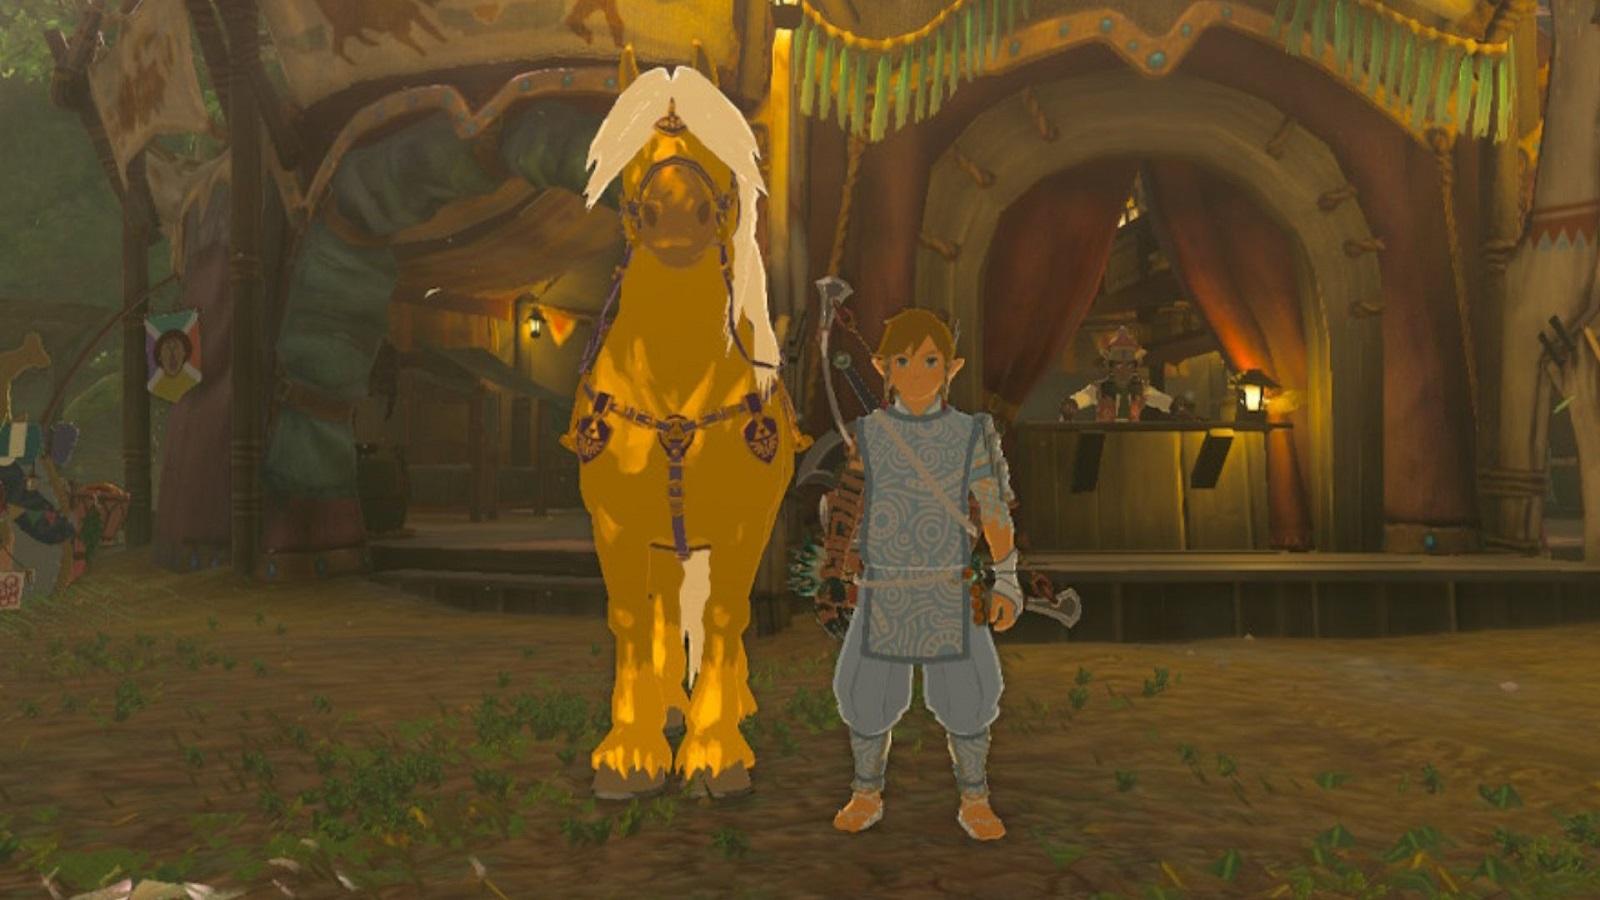 Link standing next to Zelda's golden horse